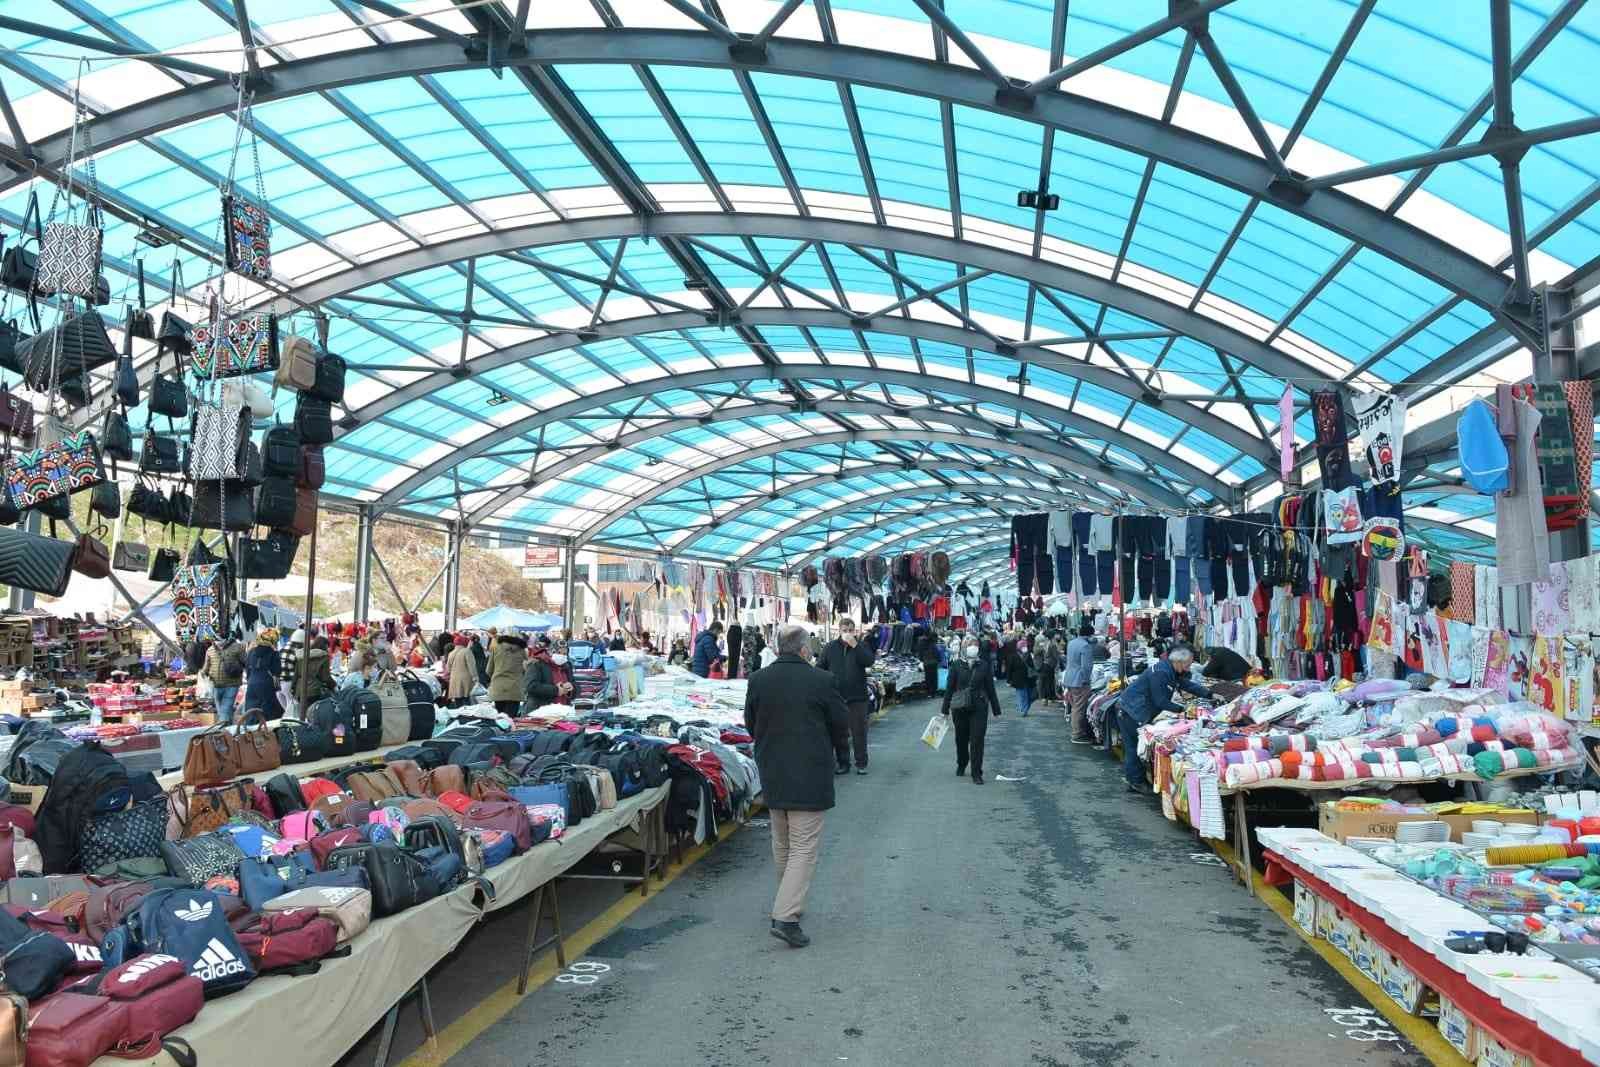 Halk arasında Sosyete Pazarı olarak anılan ve ağırlıklı olarak giyim-kuşam üzerine hizmet veren, haftanın belli günlerinde kurulan semt pazarı ...